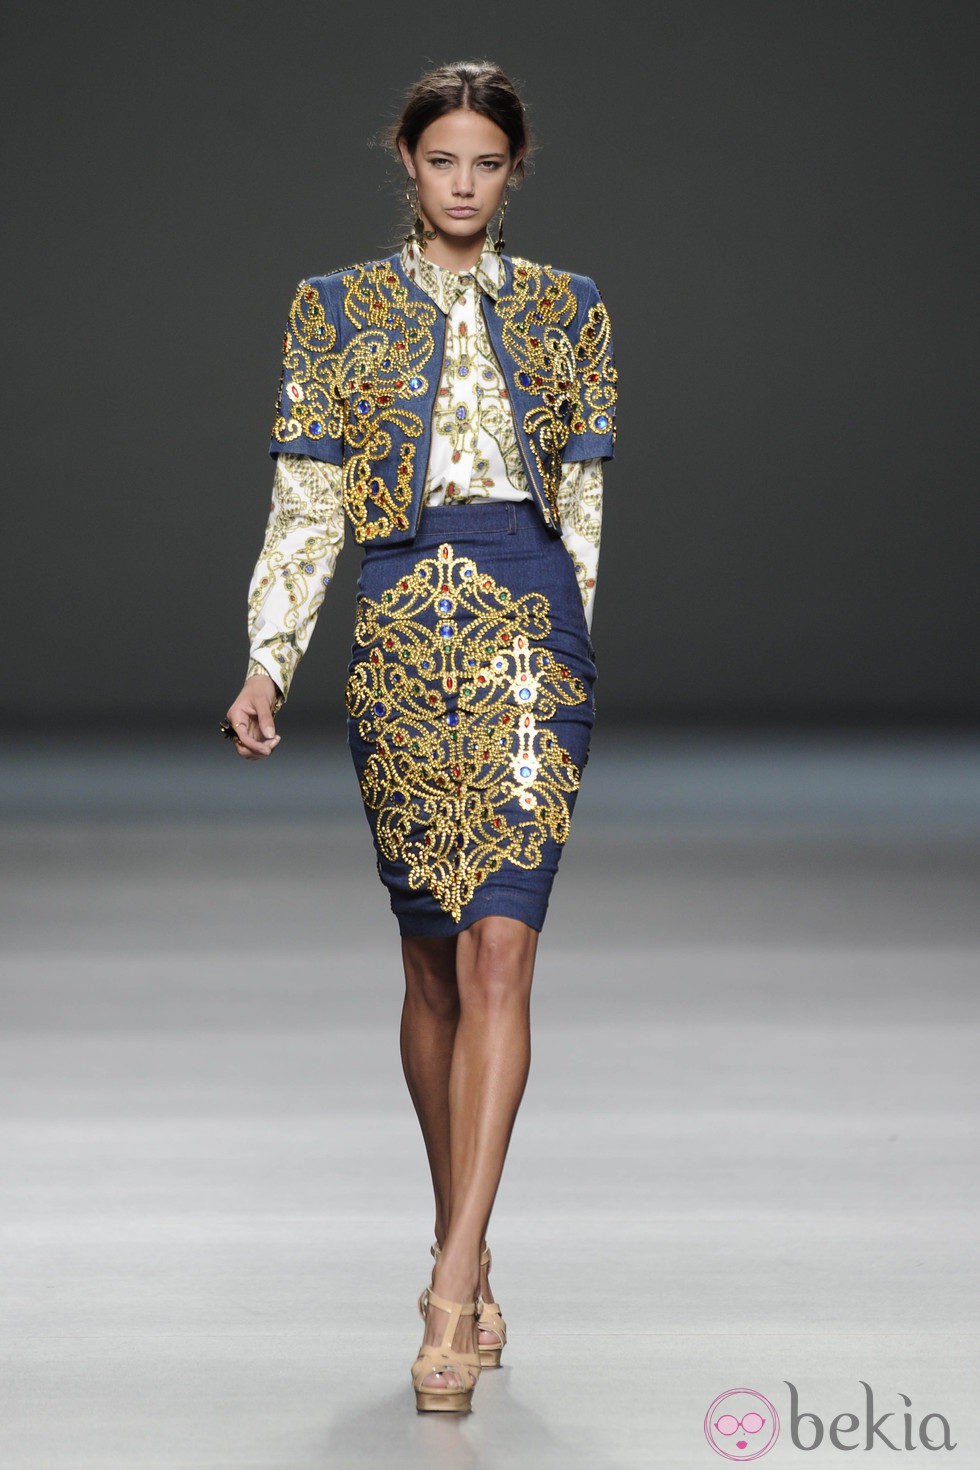 Falda de tubo y chaqueta torera con bordados de oro de la colección primavera-verano 2013 de Arnau Bosch